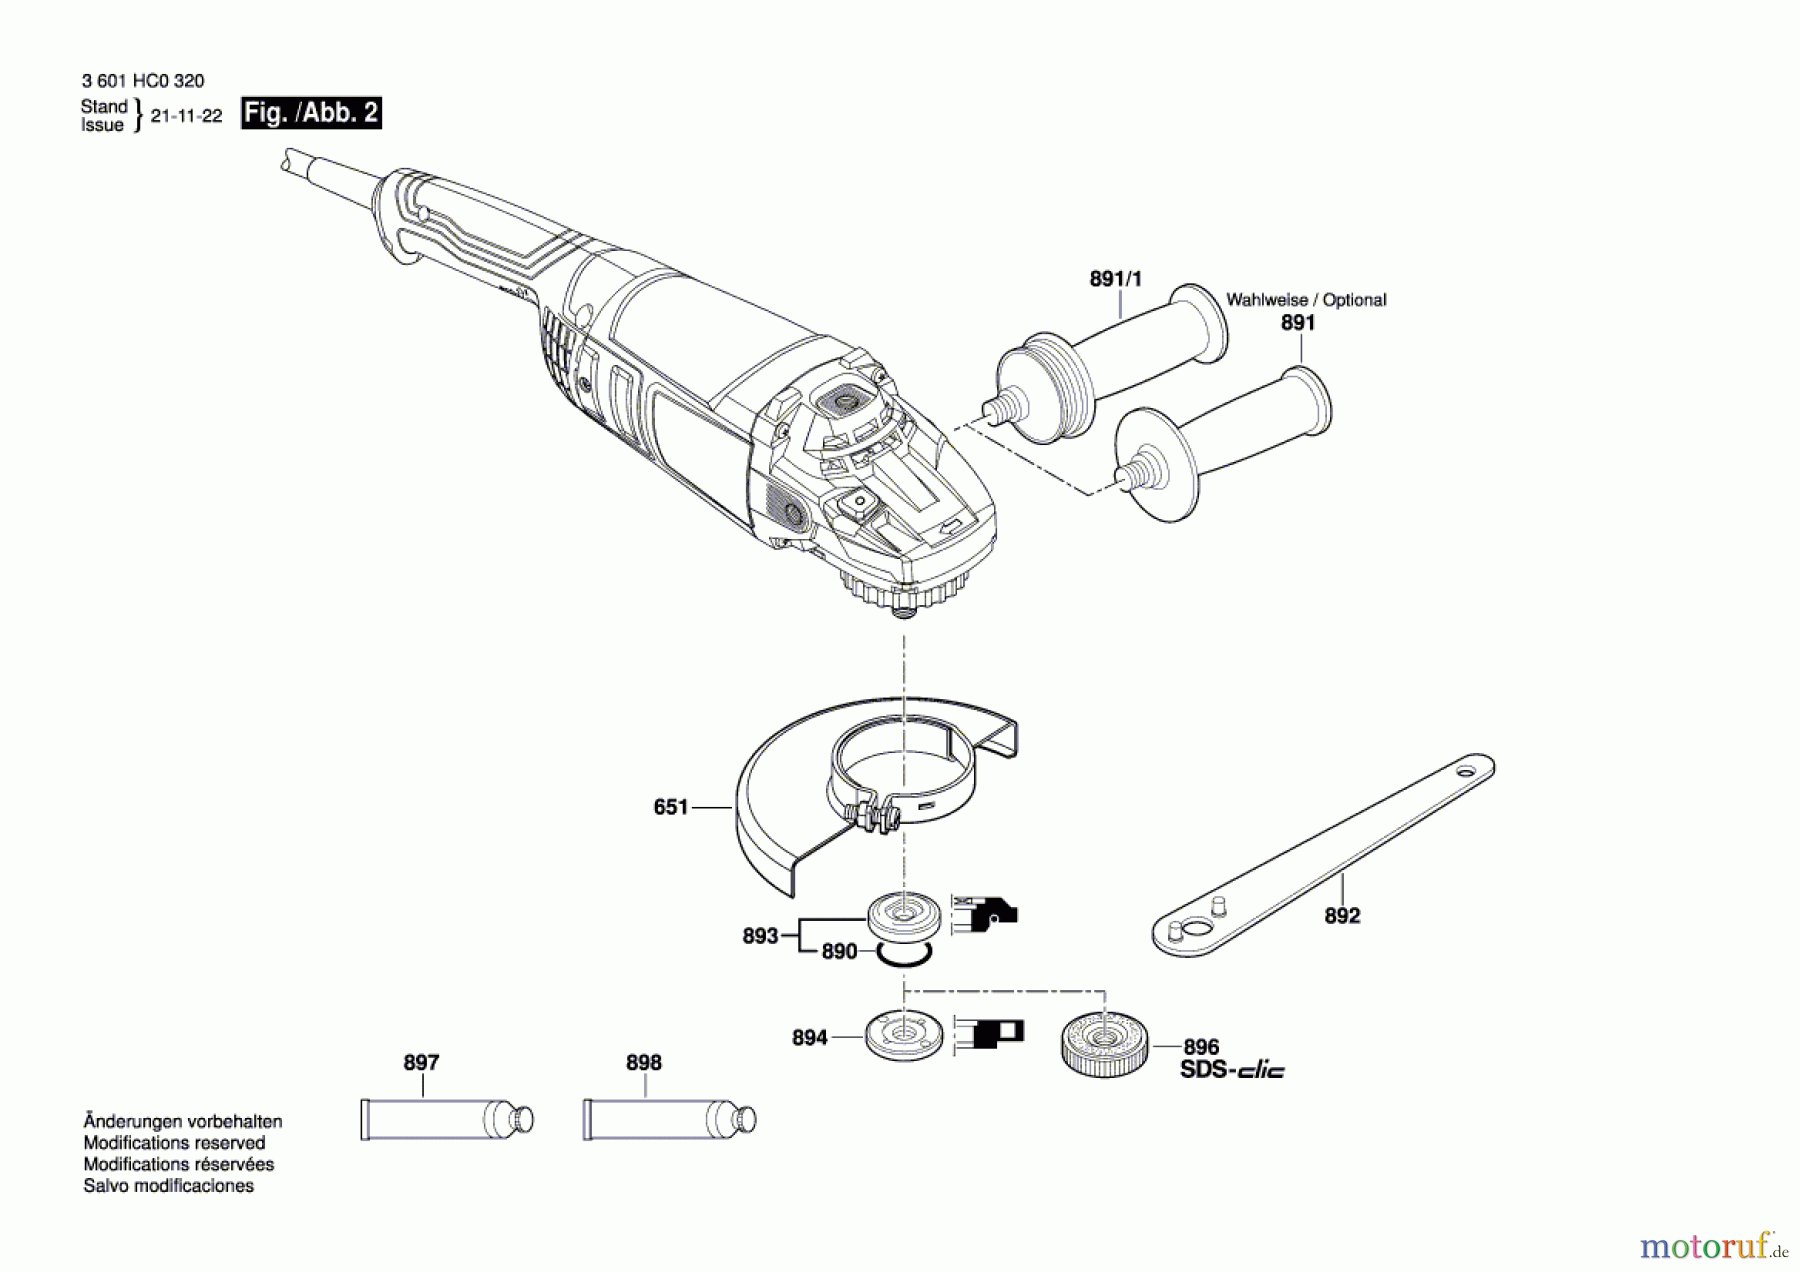  Bosch Werkzeug Winkelschleifer GWS 2200 Seite 2